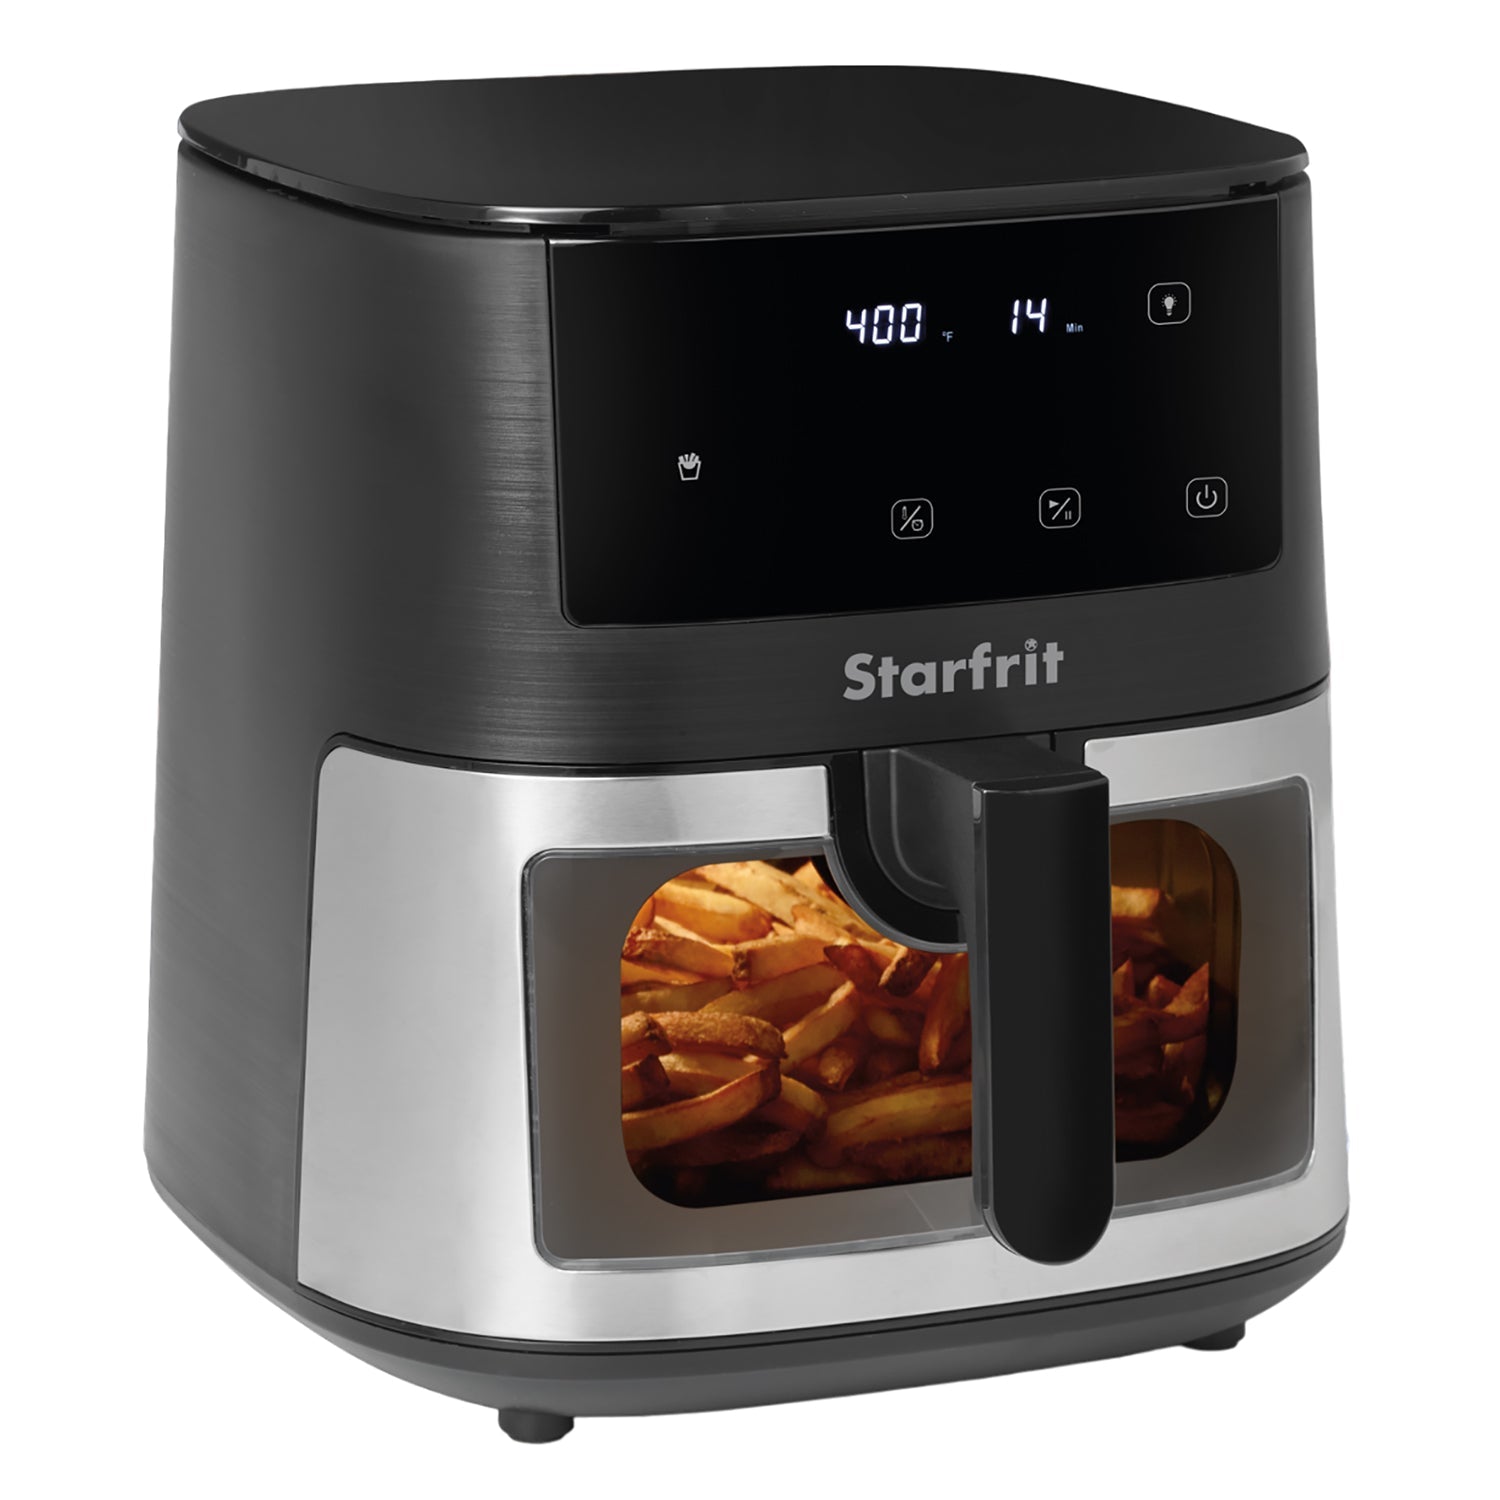 Starfrit - Friteuse à Air avec Contrôle Numérique et Fenêtre, Capacité de 7.2 Litres, Acier Inoxydable